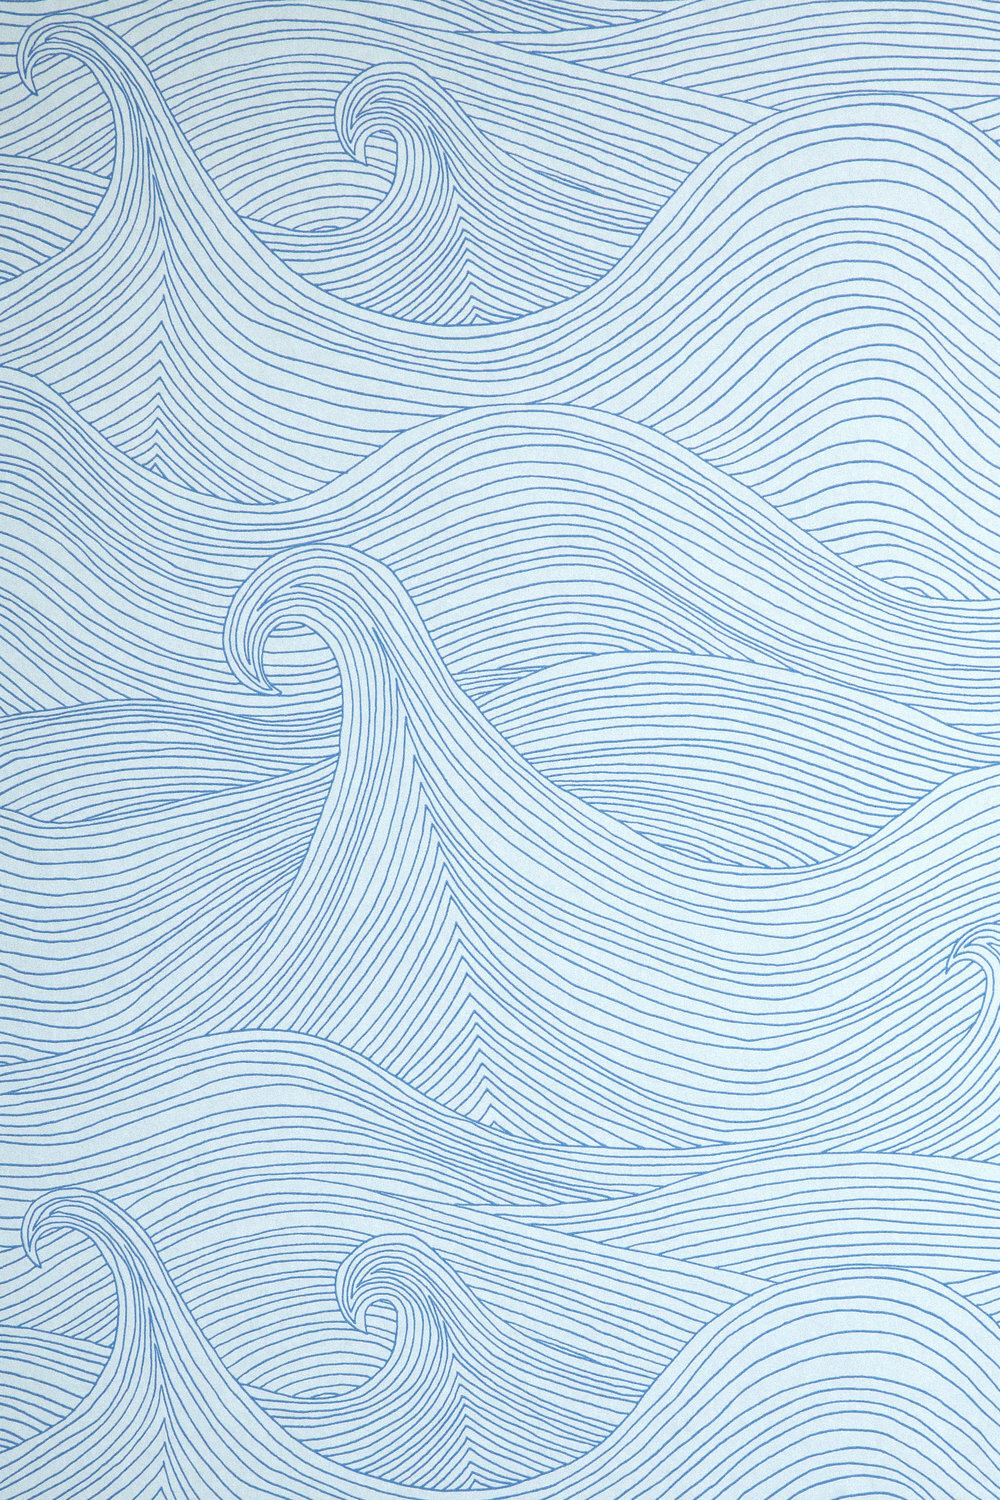 Seascape Wallpaper Swatch: Summer